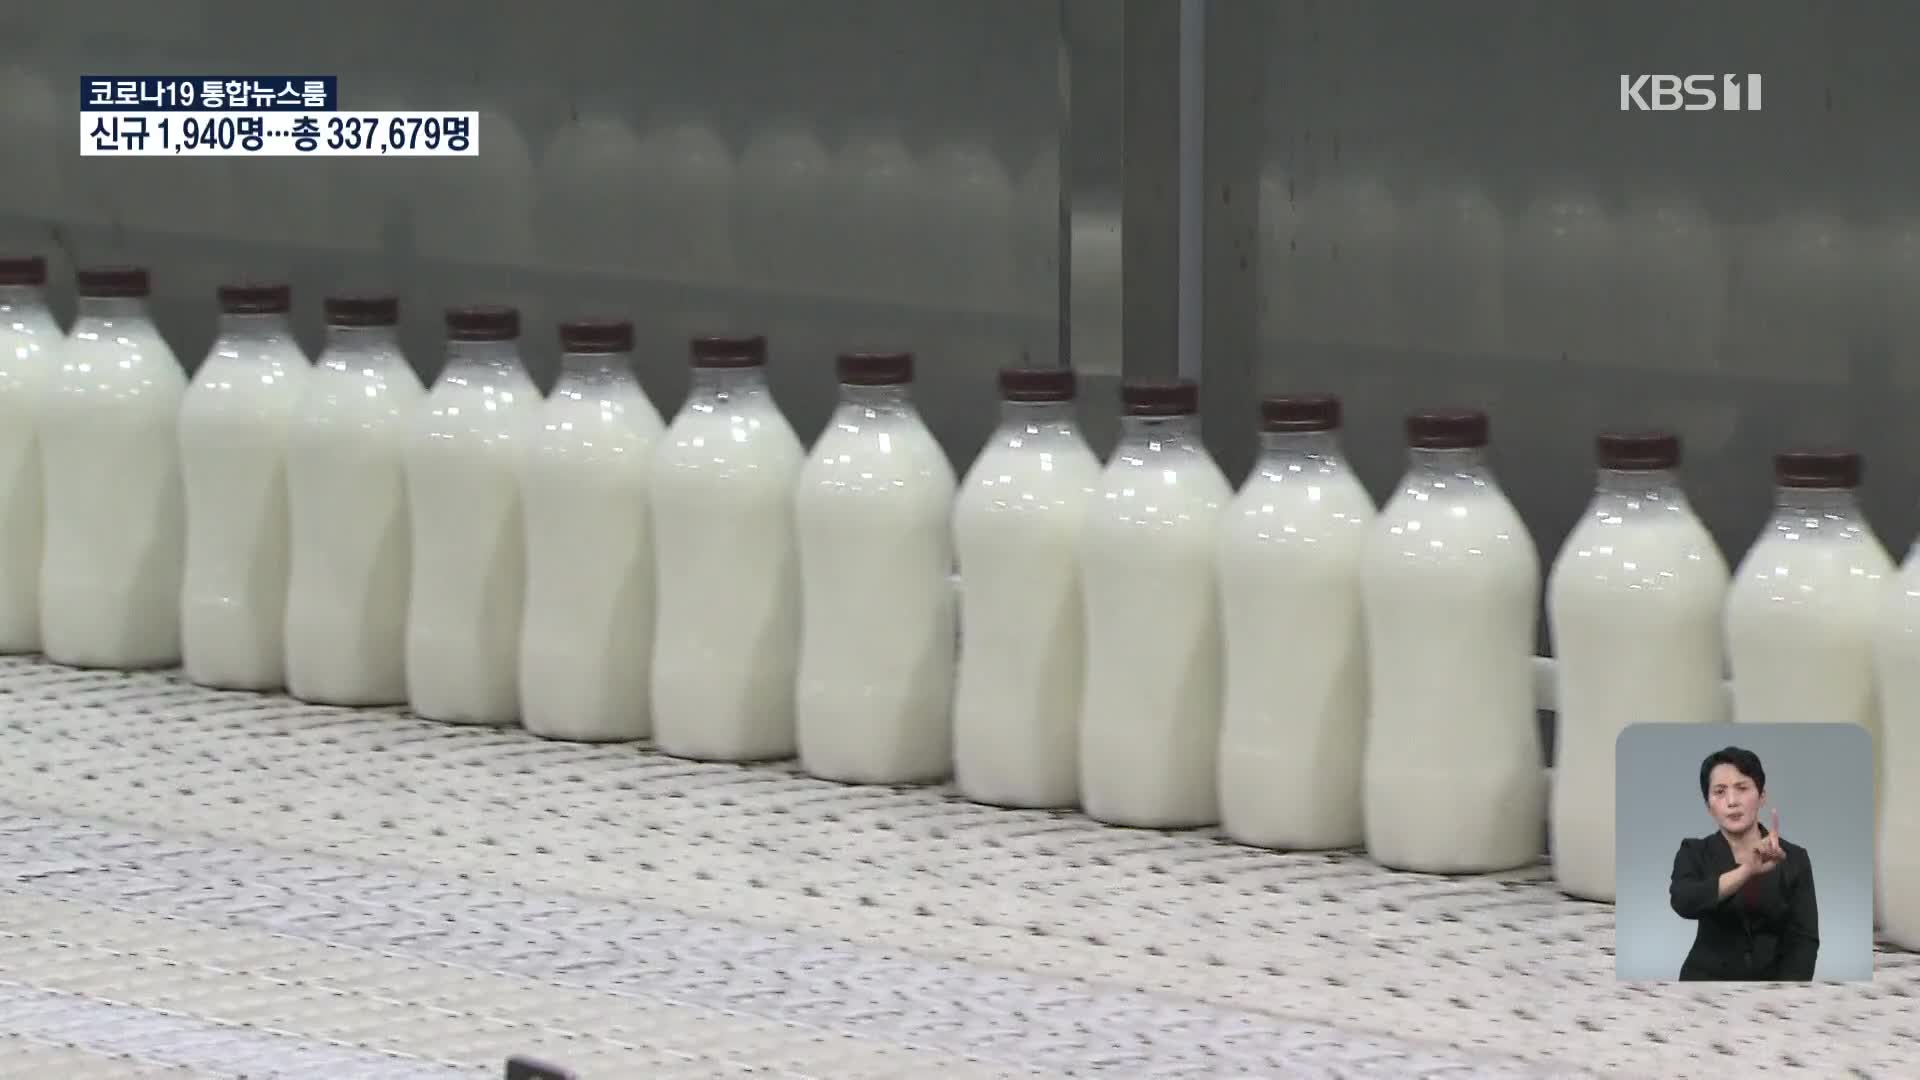 우유 남아도는데 오르는 원윳값…“낙농가 입김” VS “생산비 올라”